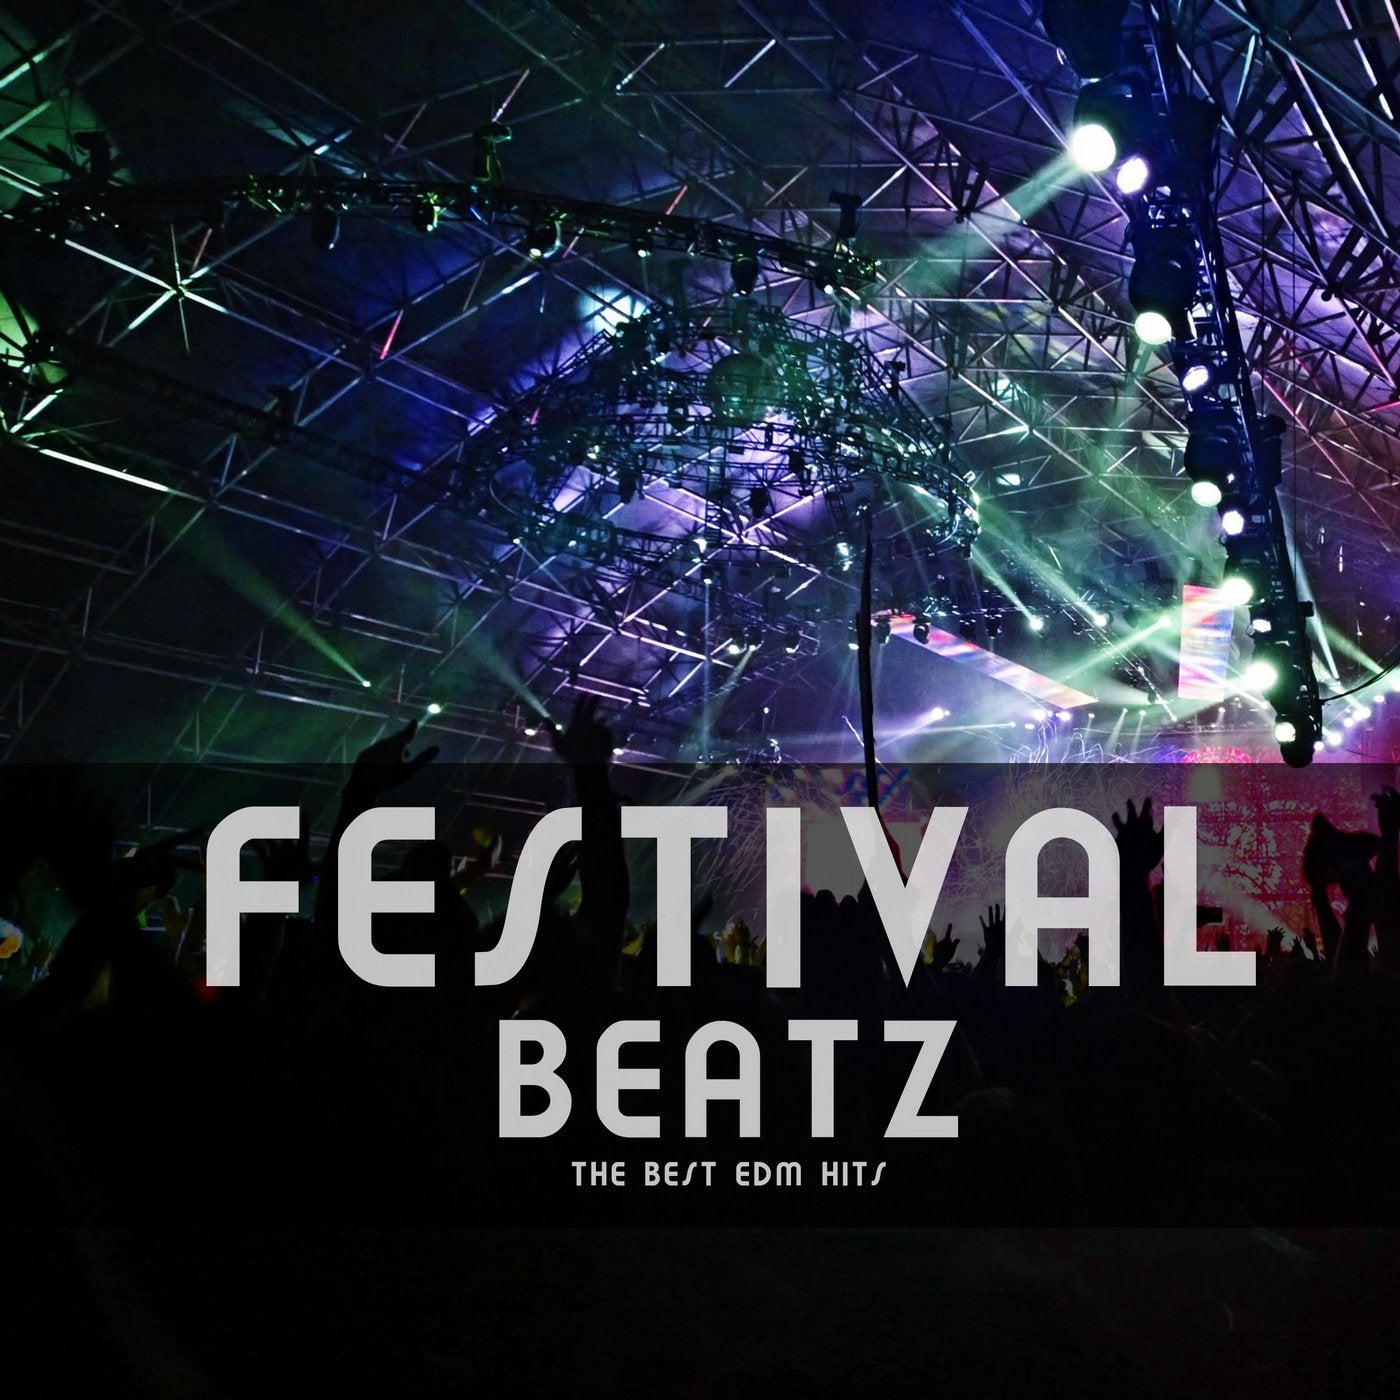 Festival Beatz (The Best EDM Hits)